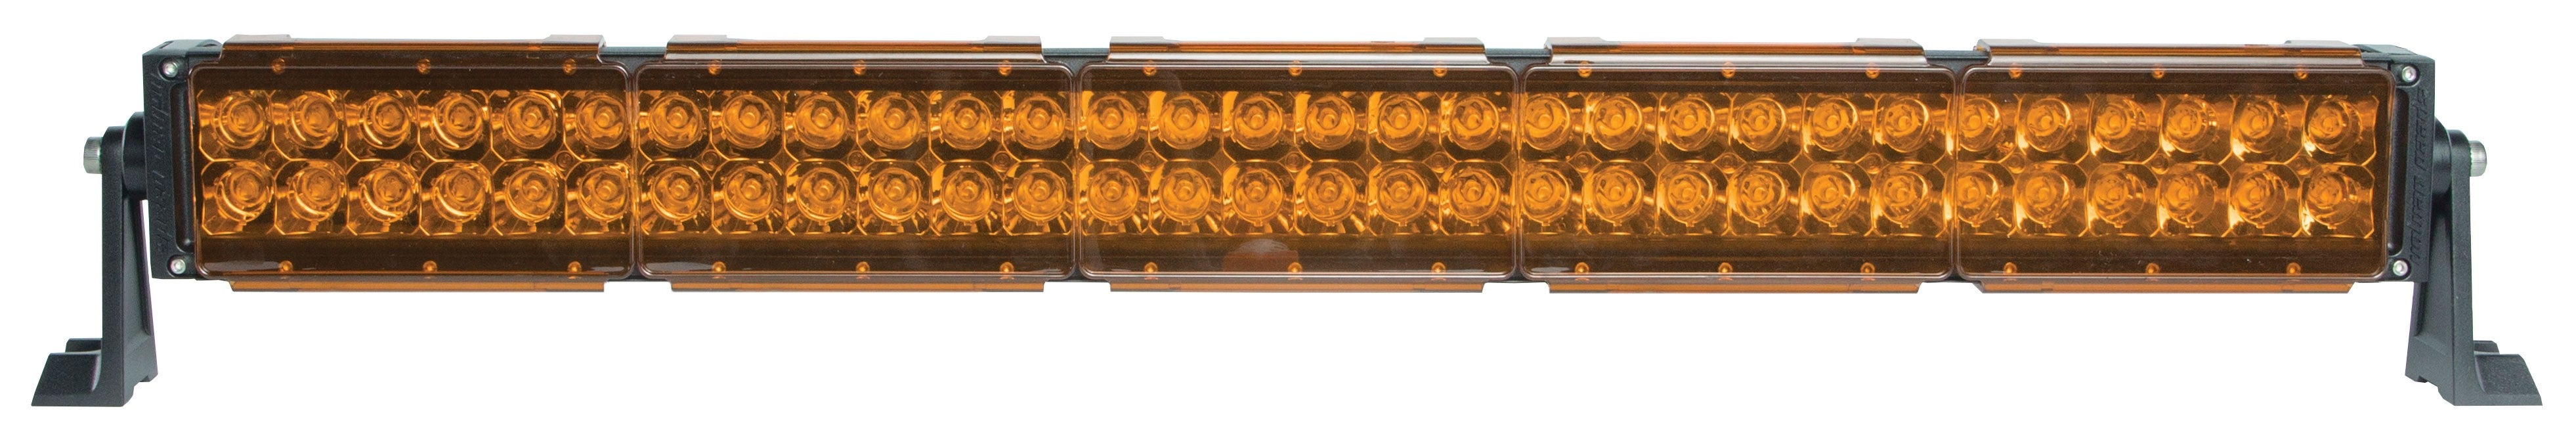 SpeedDemon Amber Light Covers for DRC, DRCX and Infinity Light Bars